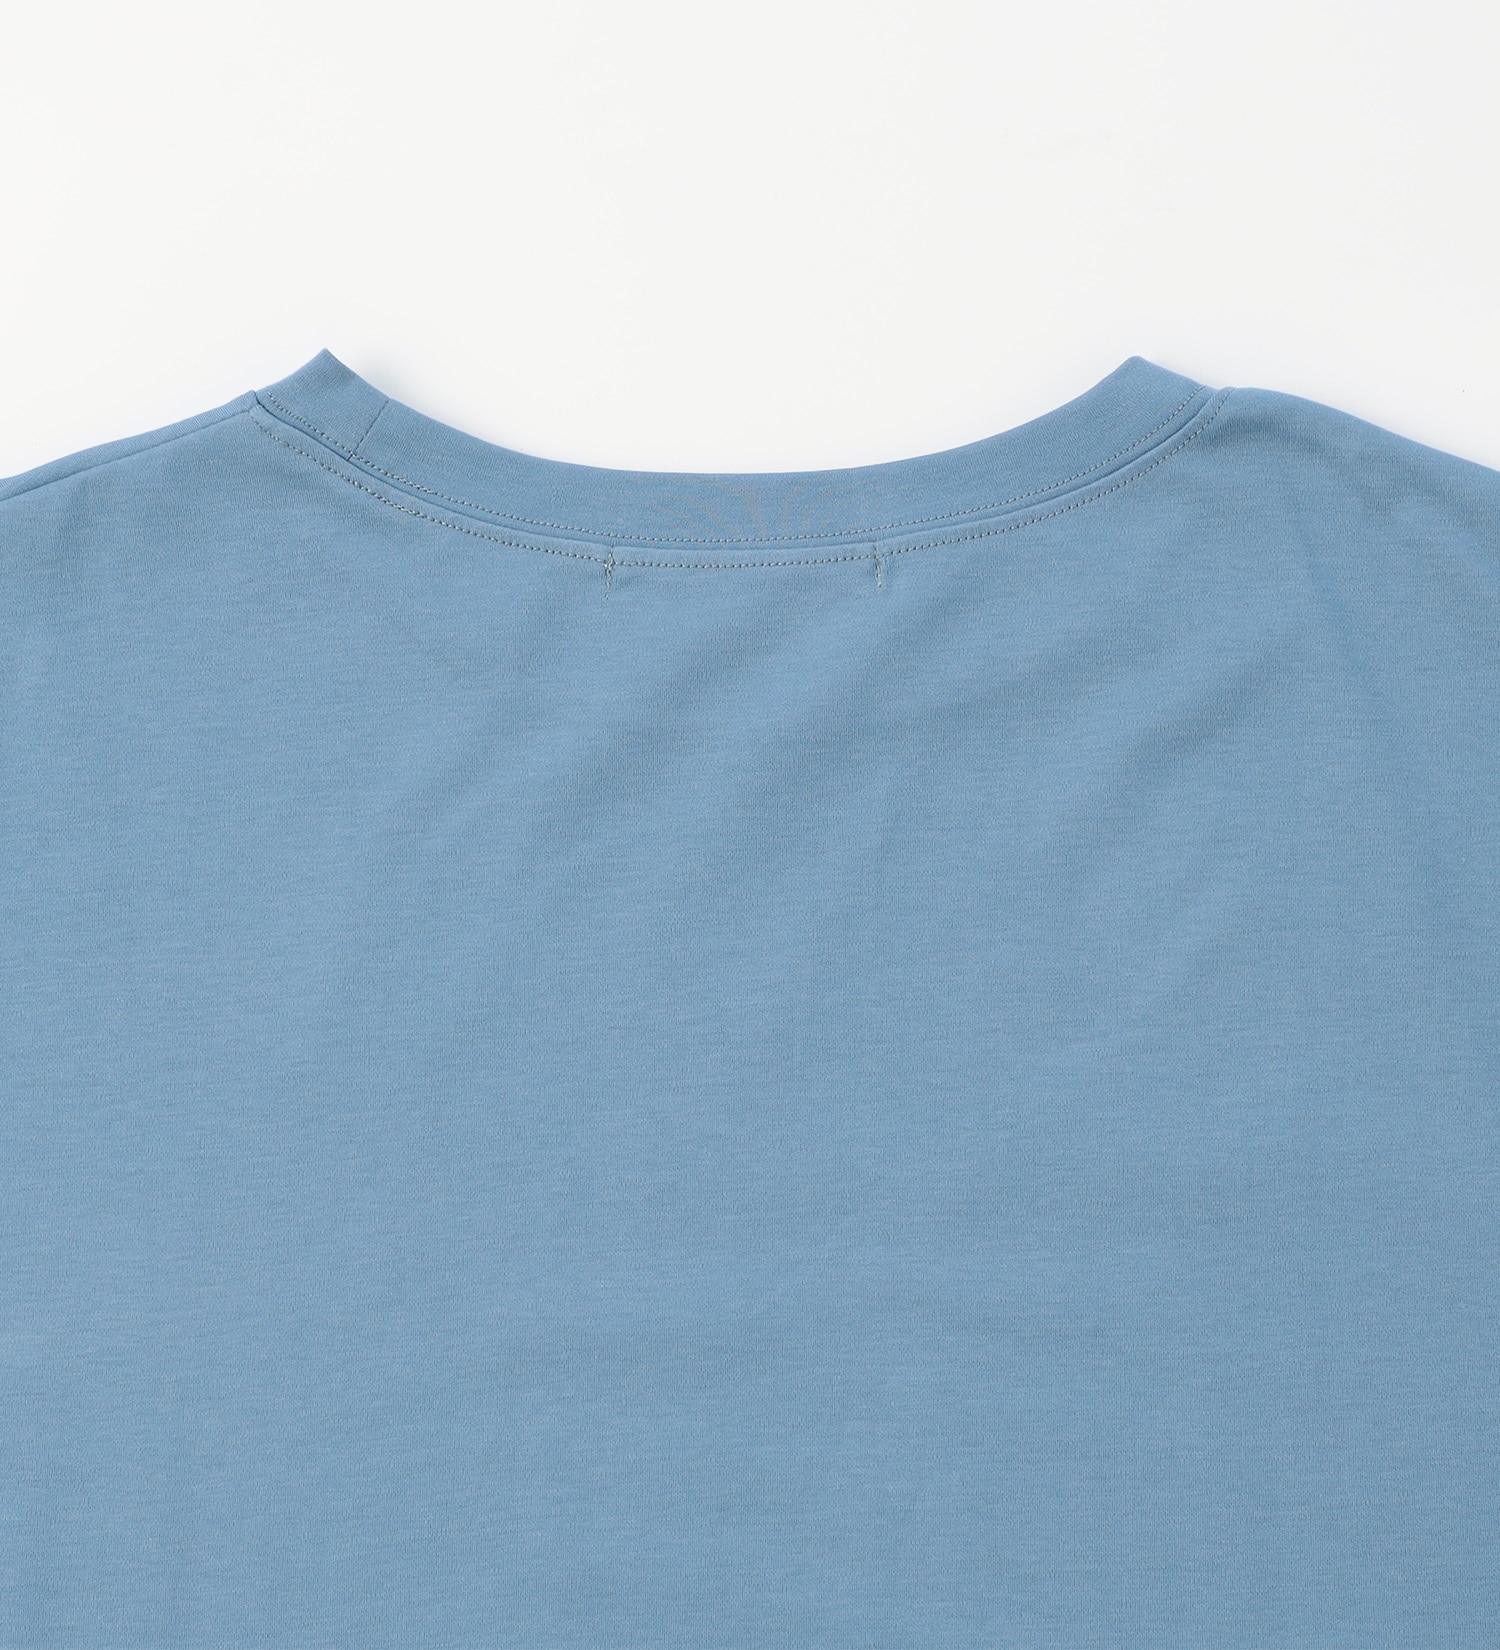 EDWIN(エドウイン)の【BLACKFRIDAY】バイカラーTシャツ 半袖【アウトレット店舗・WEB限定】|トップス/Tシャツ/カットソー/レディース|ブルー